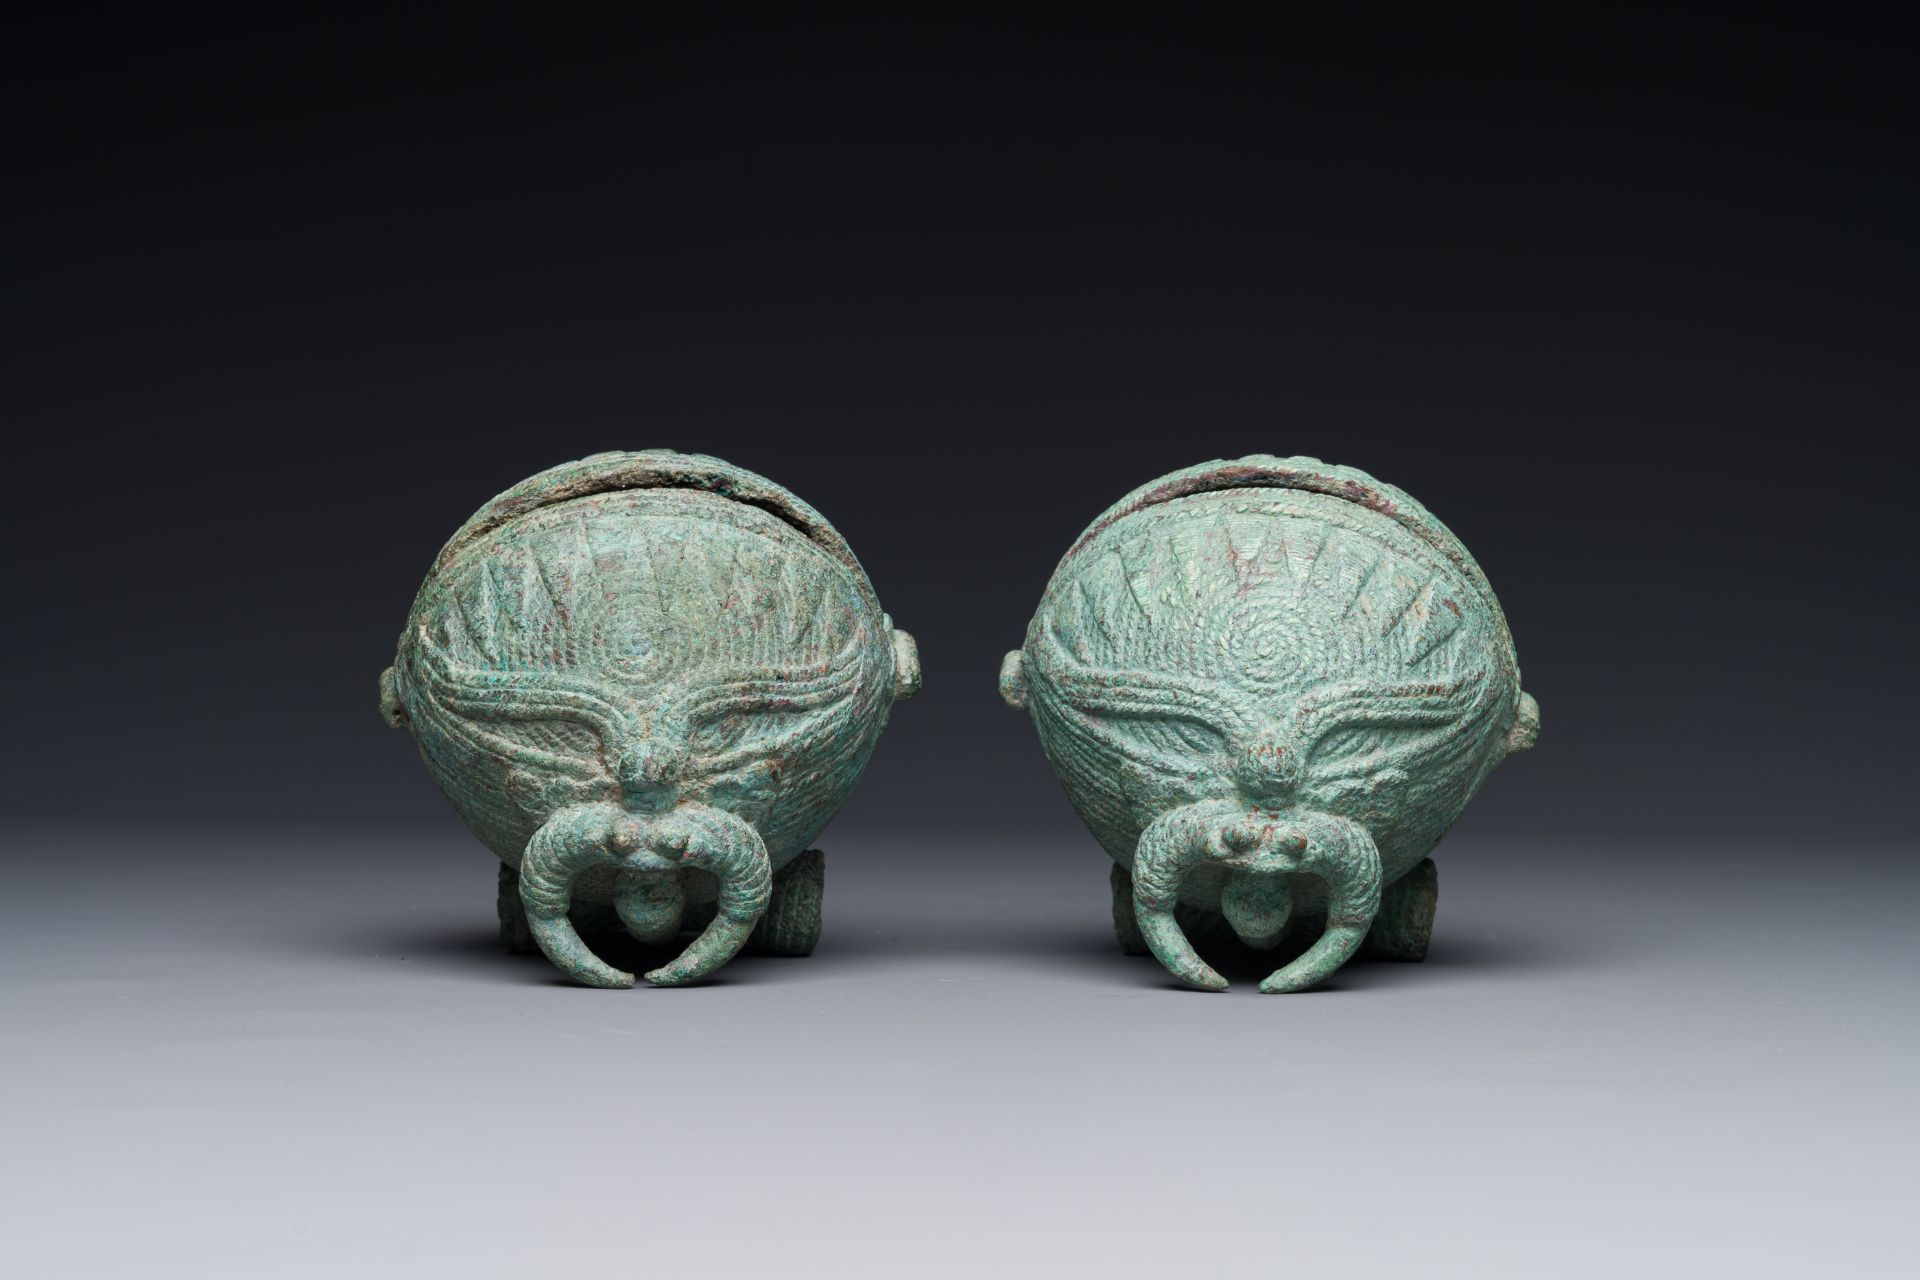 A pair of round bronze bells for water buffalo, Cambodia, Batambang provence, 300 BC - Image 4 of 15